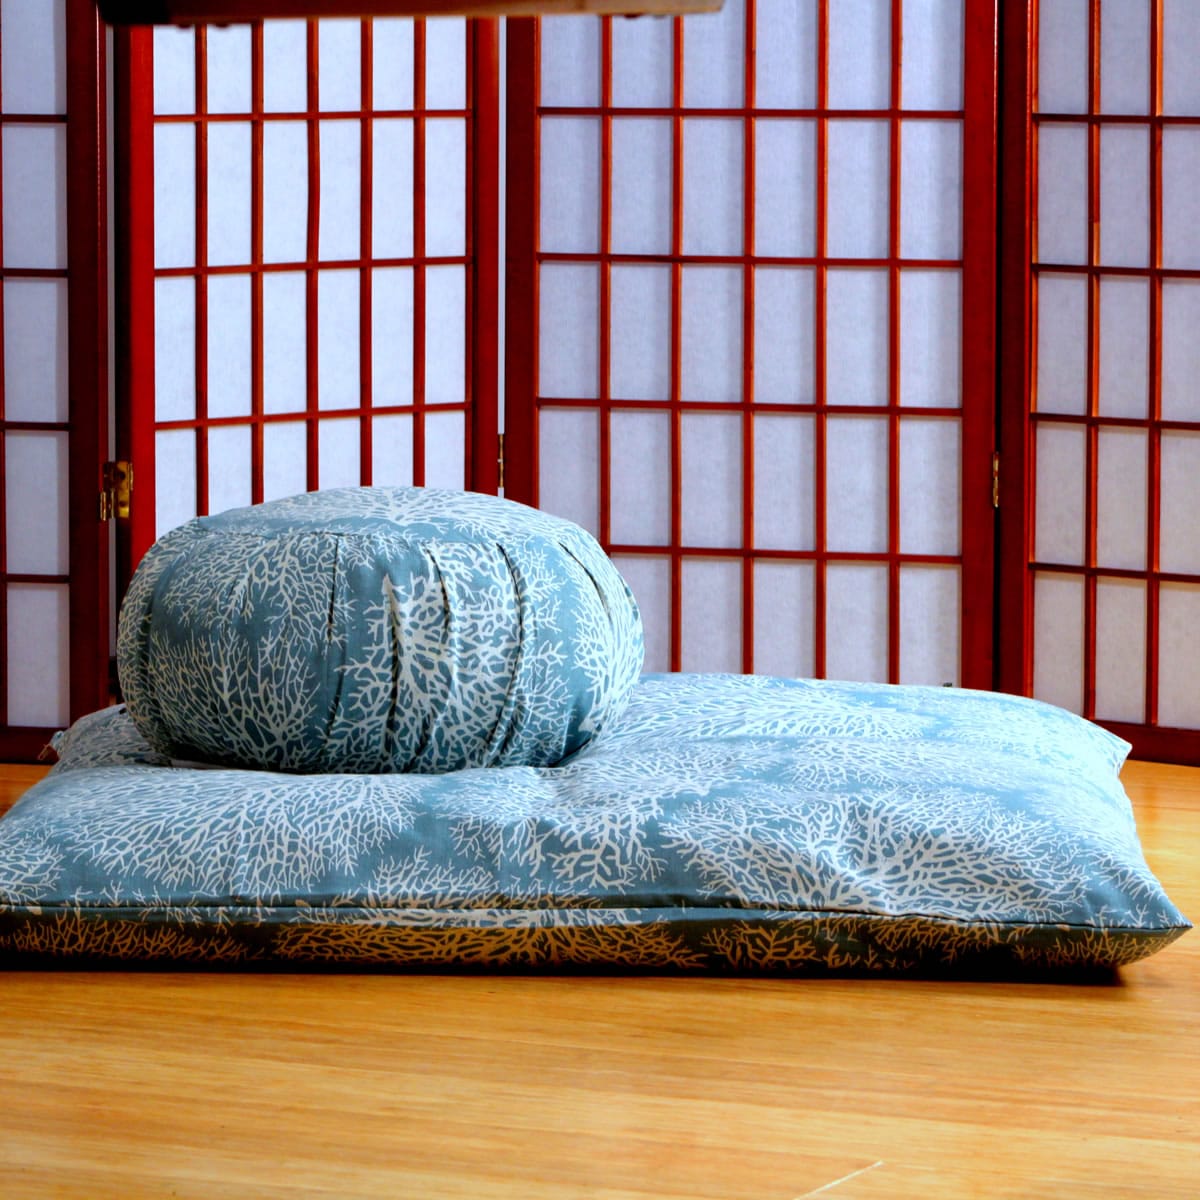 Black Meditation Cushion Set - Still Sitting Meditation Supply